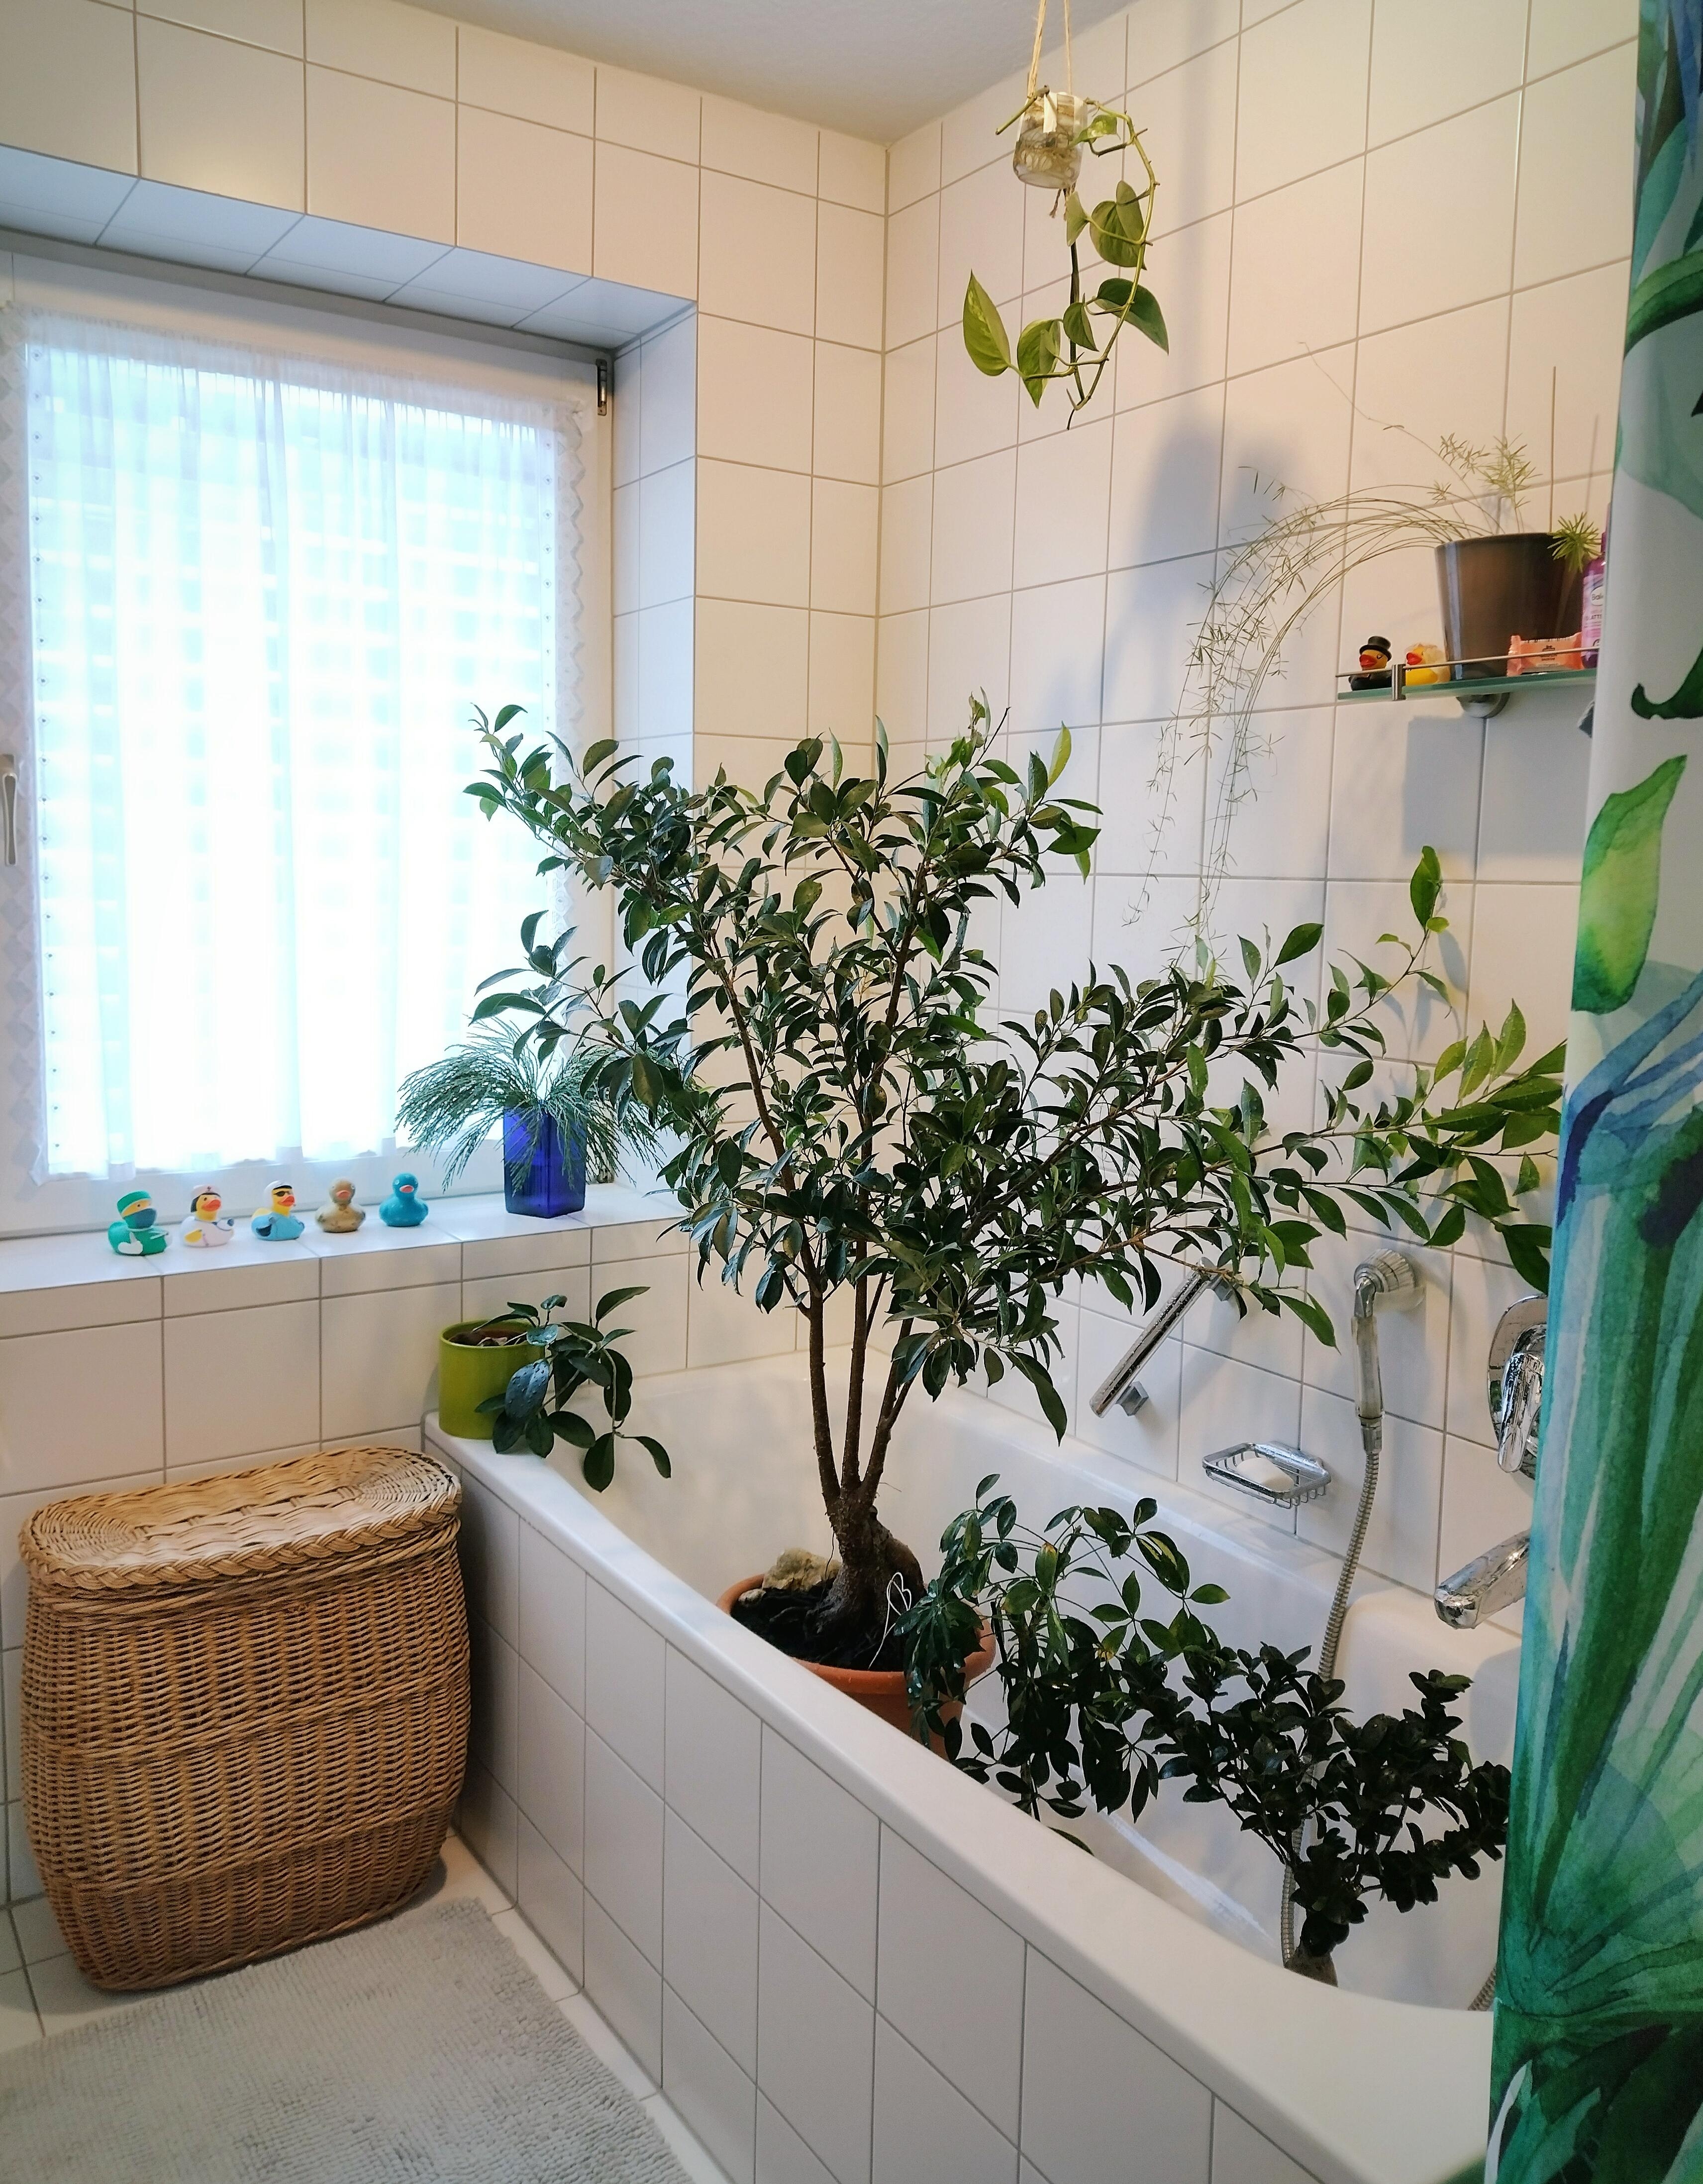 Plant wash, yeah! 😅🪴🛁
#badezimmer #badewanne #pflanzen #pflanzenliebe #zimmerpflanzen #wäschekorb #rattankorb